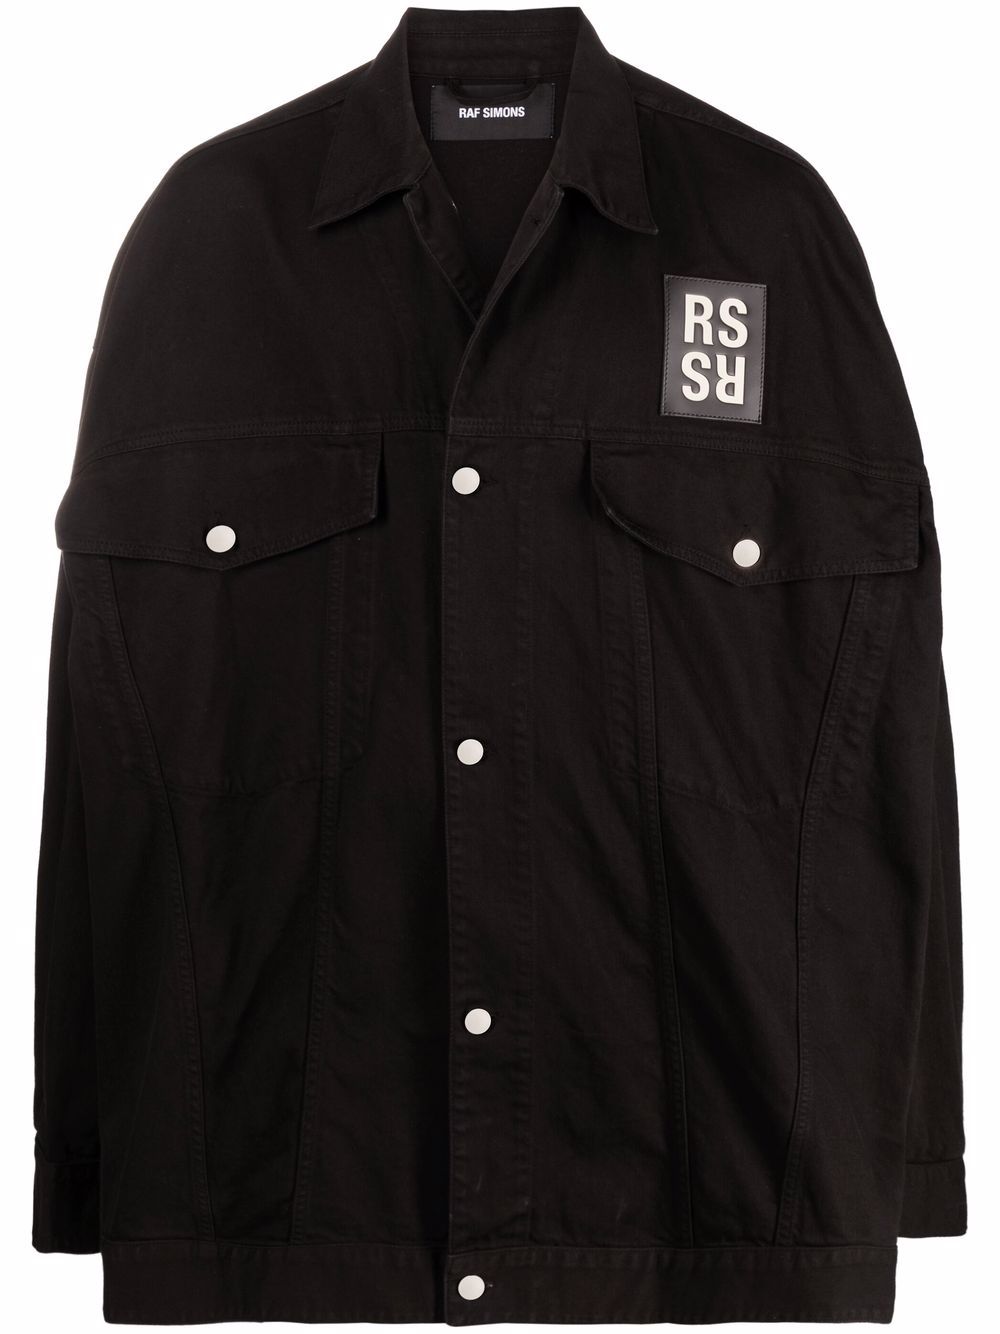 фото Raf simons джинсовая куртка с нашивкой-логотипом